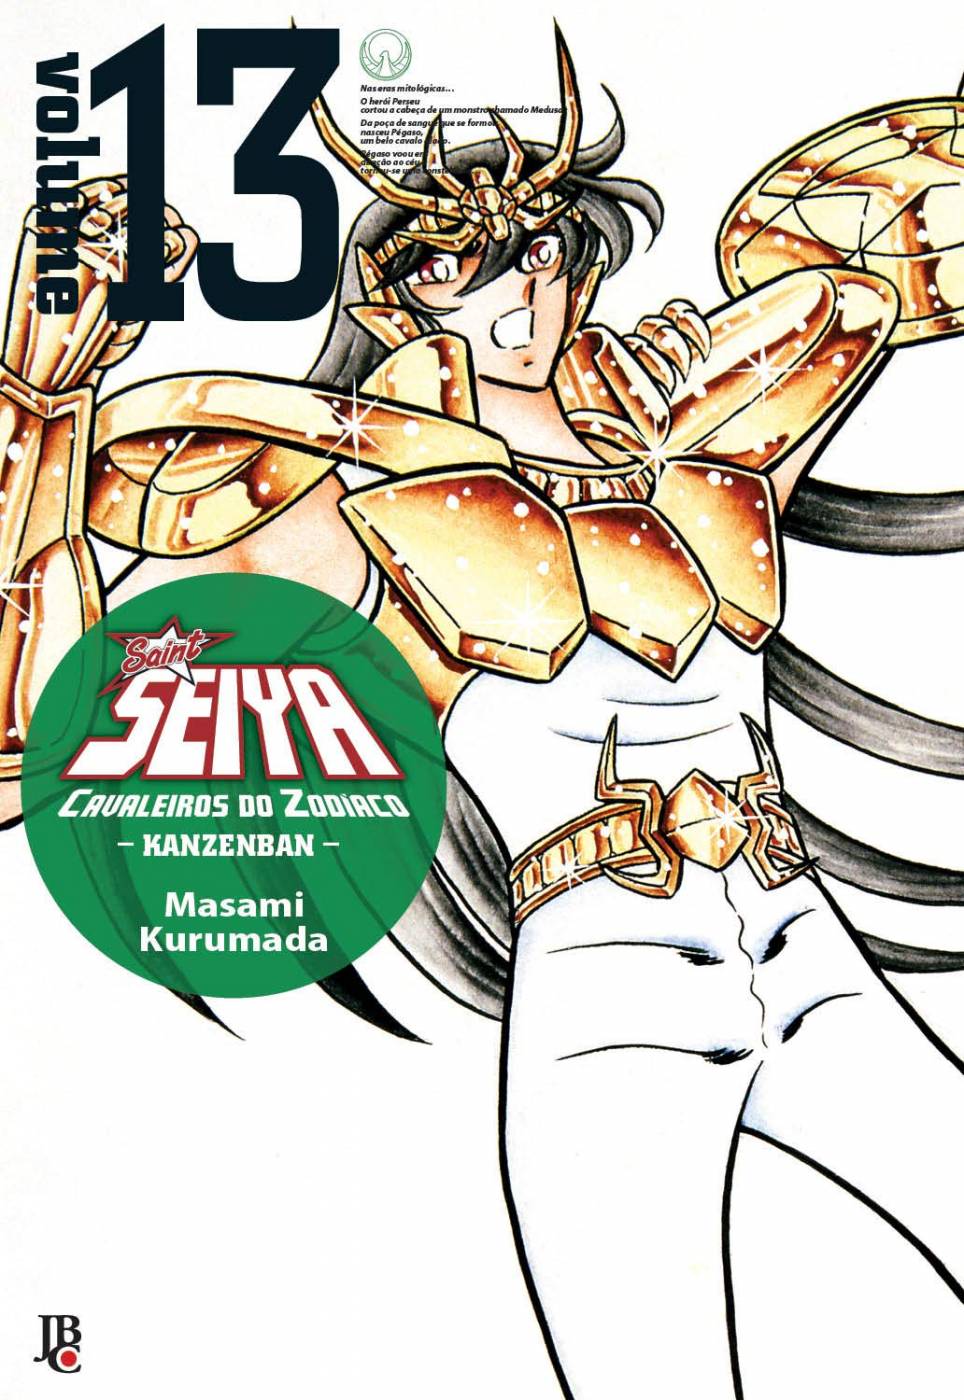 Saint Seiya - Kanzenban - Os Cavaleiros do Zodíaco - Vol.13